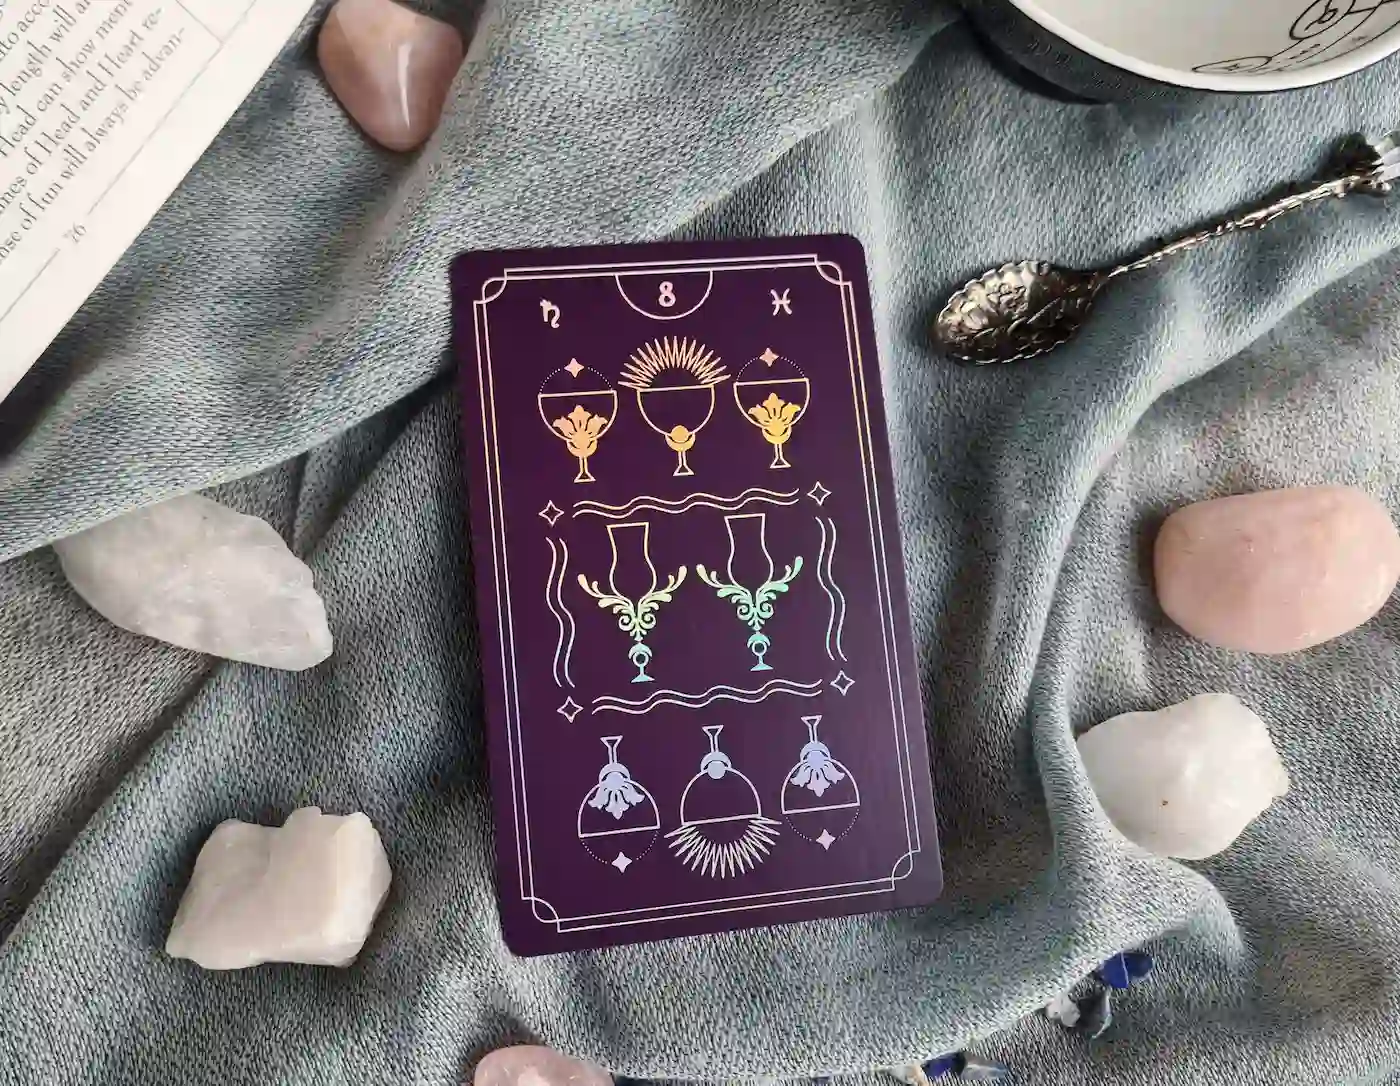 8 of Cups tarot card